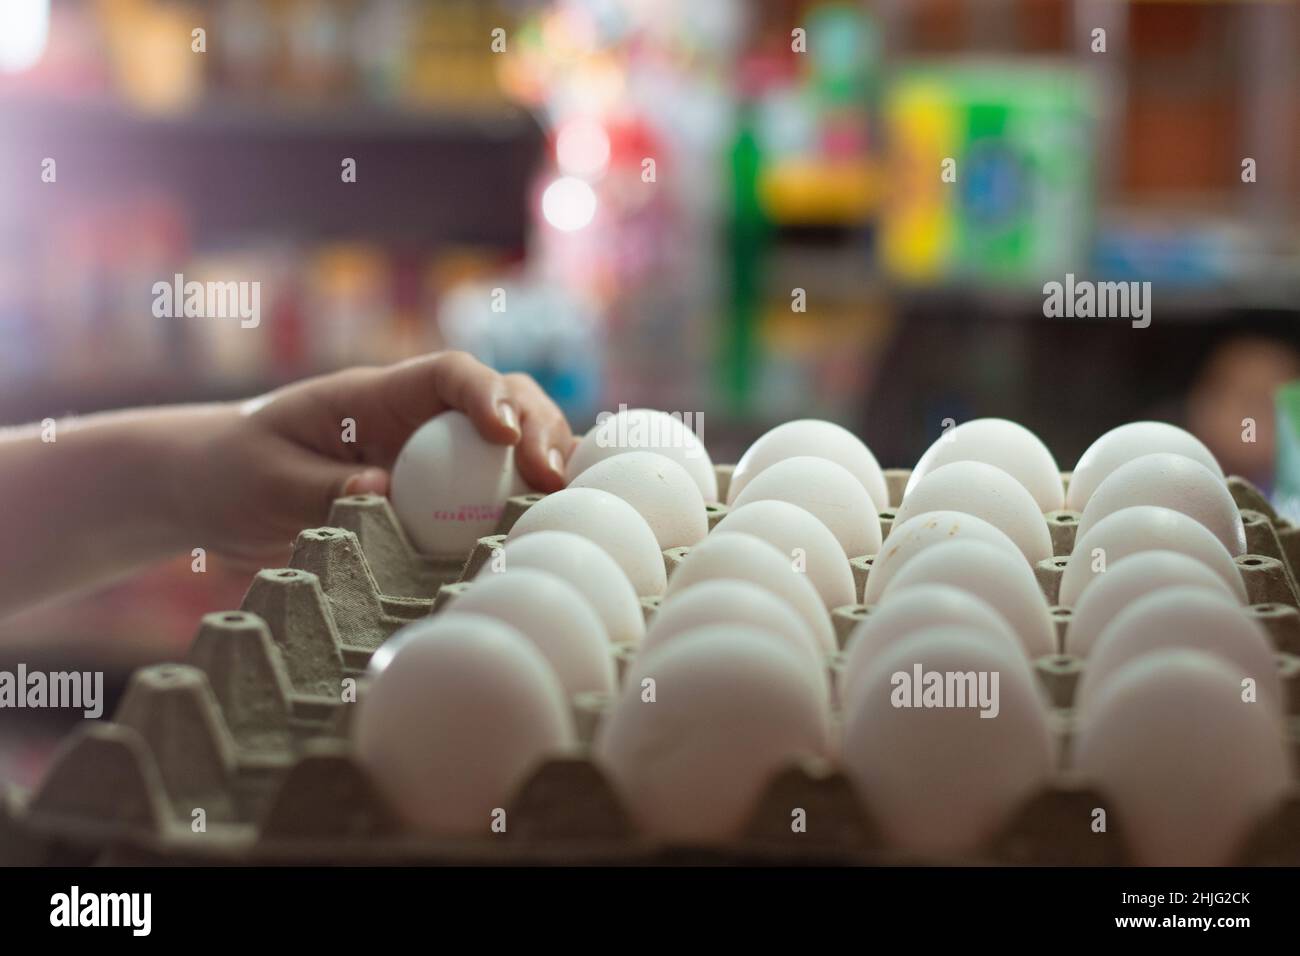 Hand einer Frau, die weiße Hühnereier hält, in einen Eierkarton gelegt. Verkauf von Eiern in einem Lebensmittelgeschäft. Eier, die reich an Eiweißalbumin sind, bereit, verkauft zu werden Stockfoto